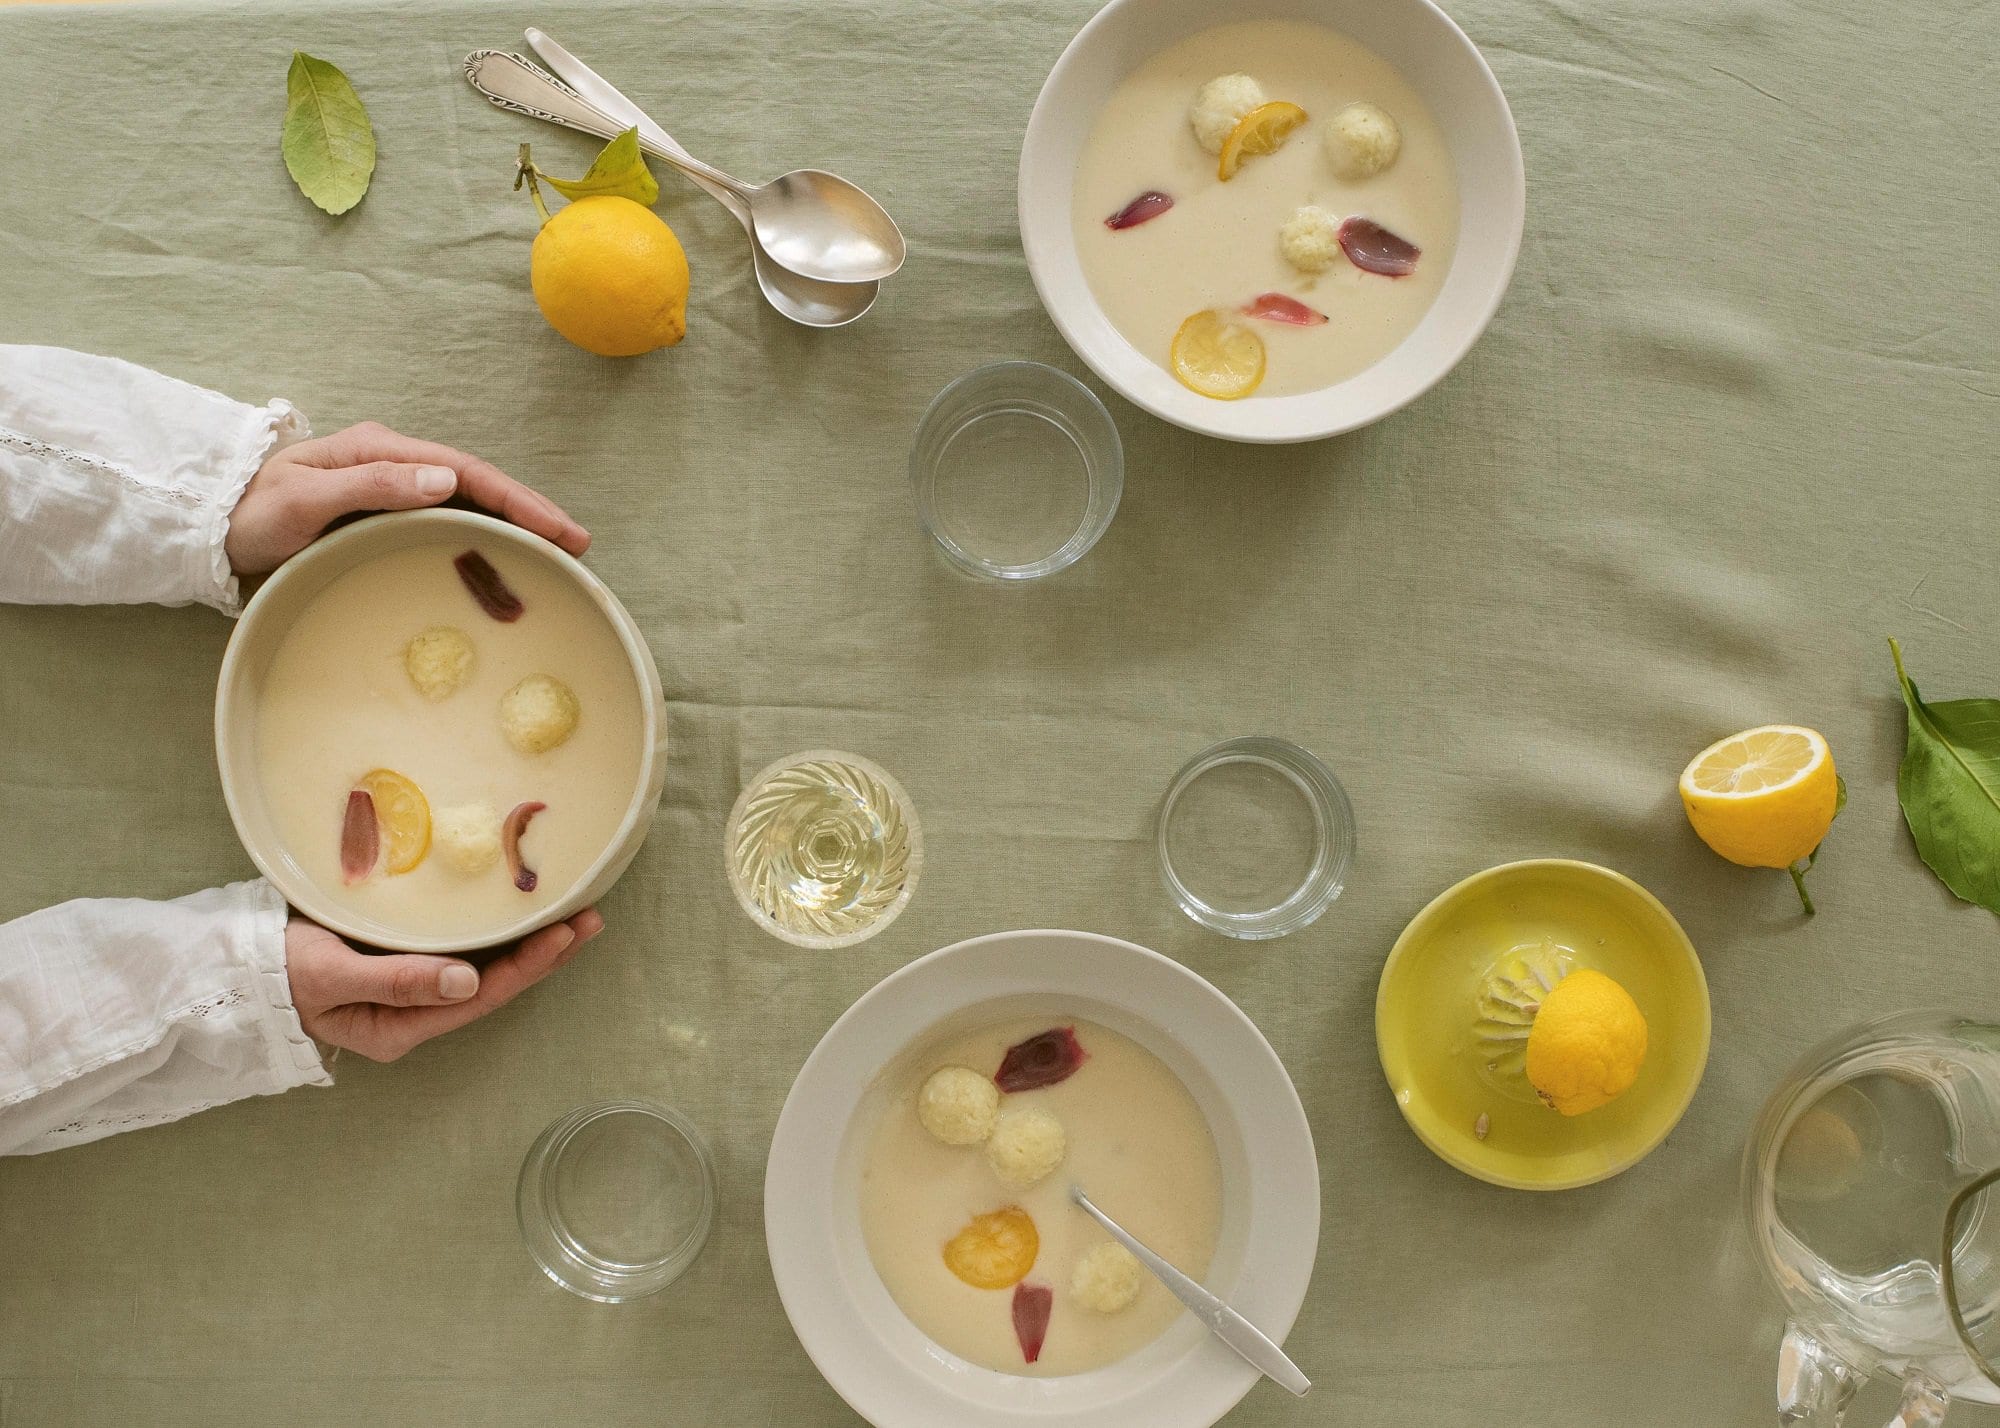 3 Schüssel Zitronensuppe mit Klößen aus dem Kochbuch "Suppenkult", nach einer Schüssel greifen zwei Hände, drumherum verteilt Zitronen, Gläser und Löffel, Draufsicht.